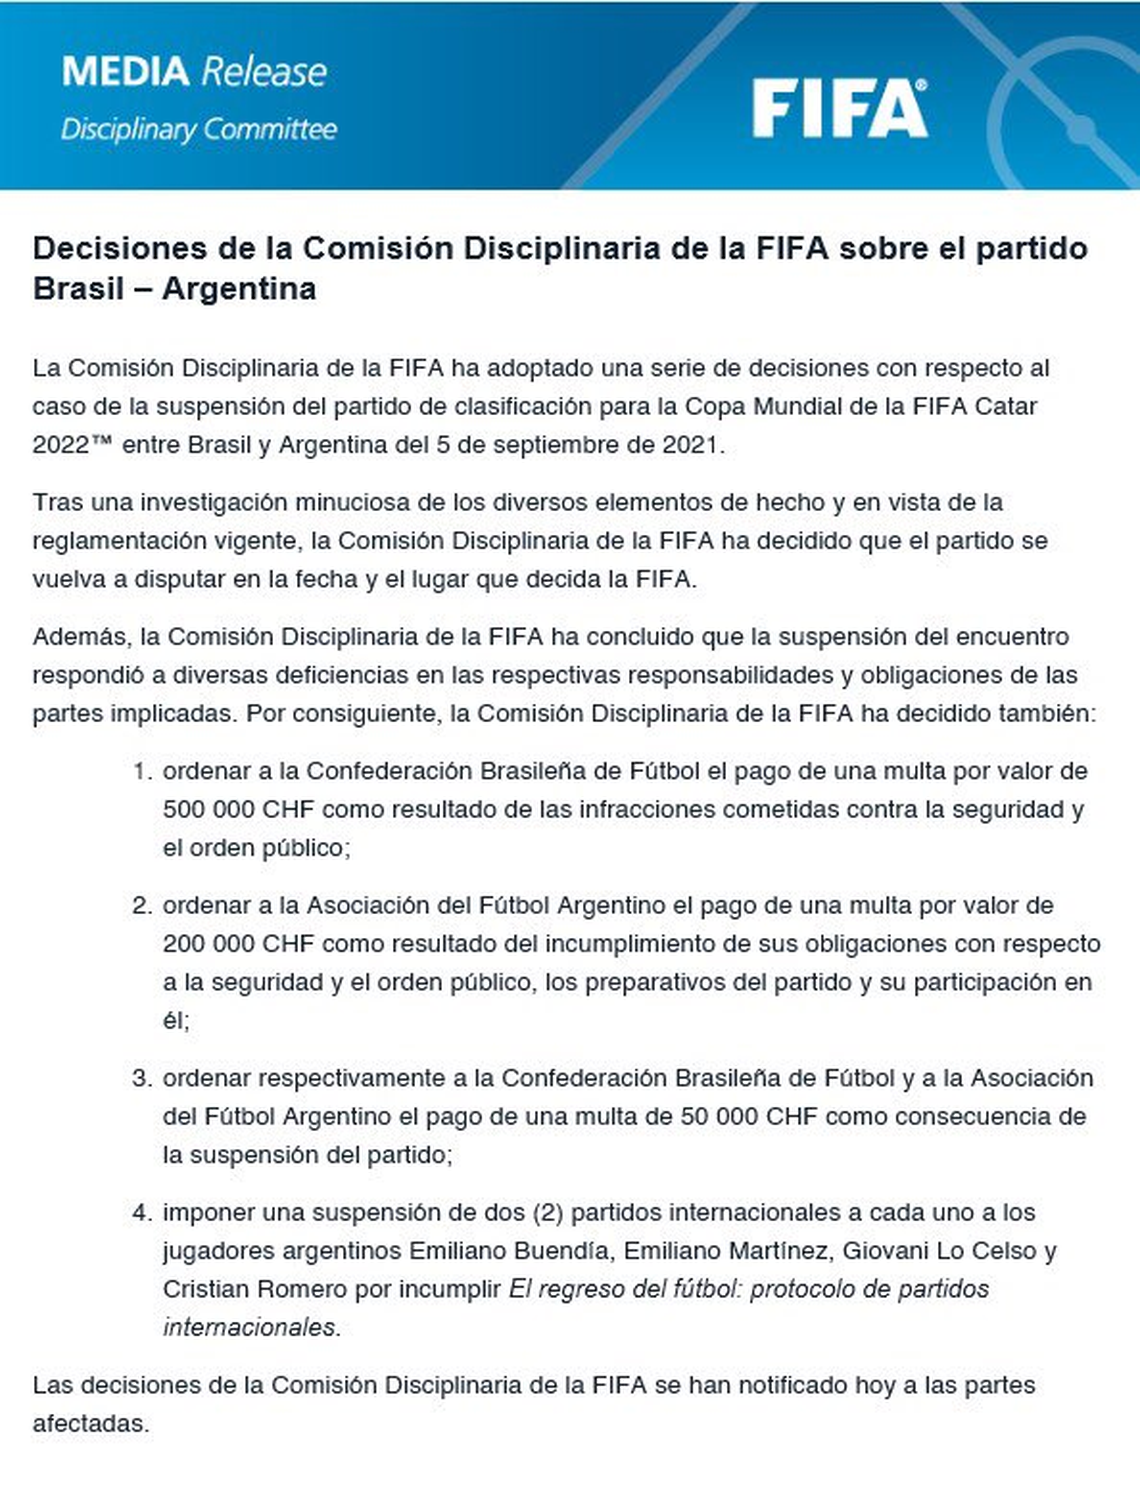 El comunicado de FIFA